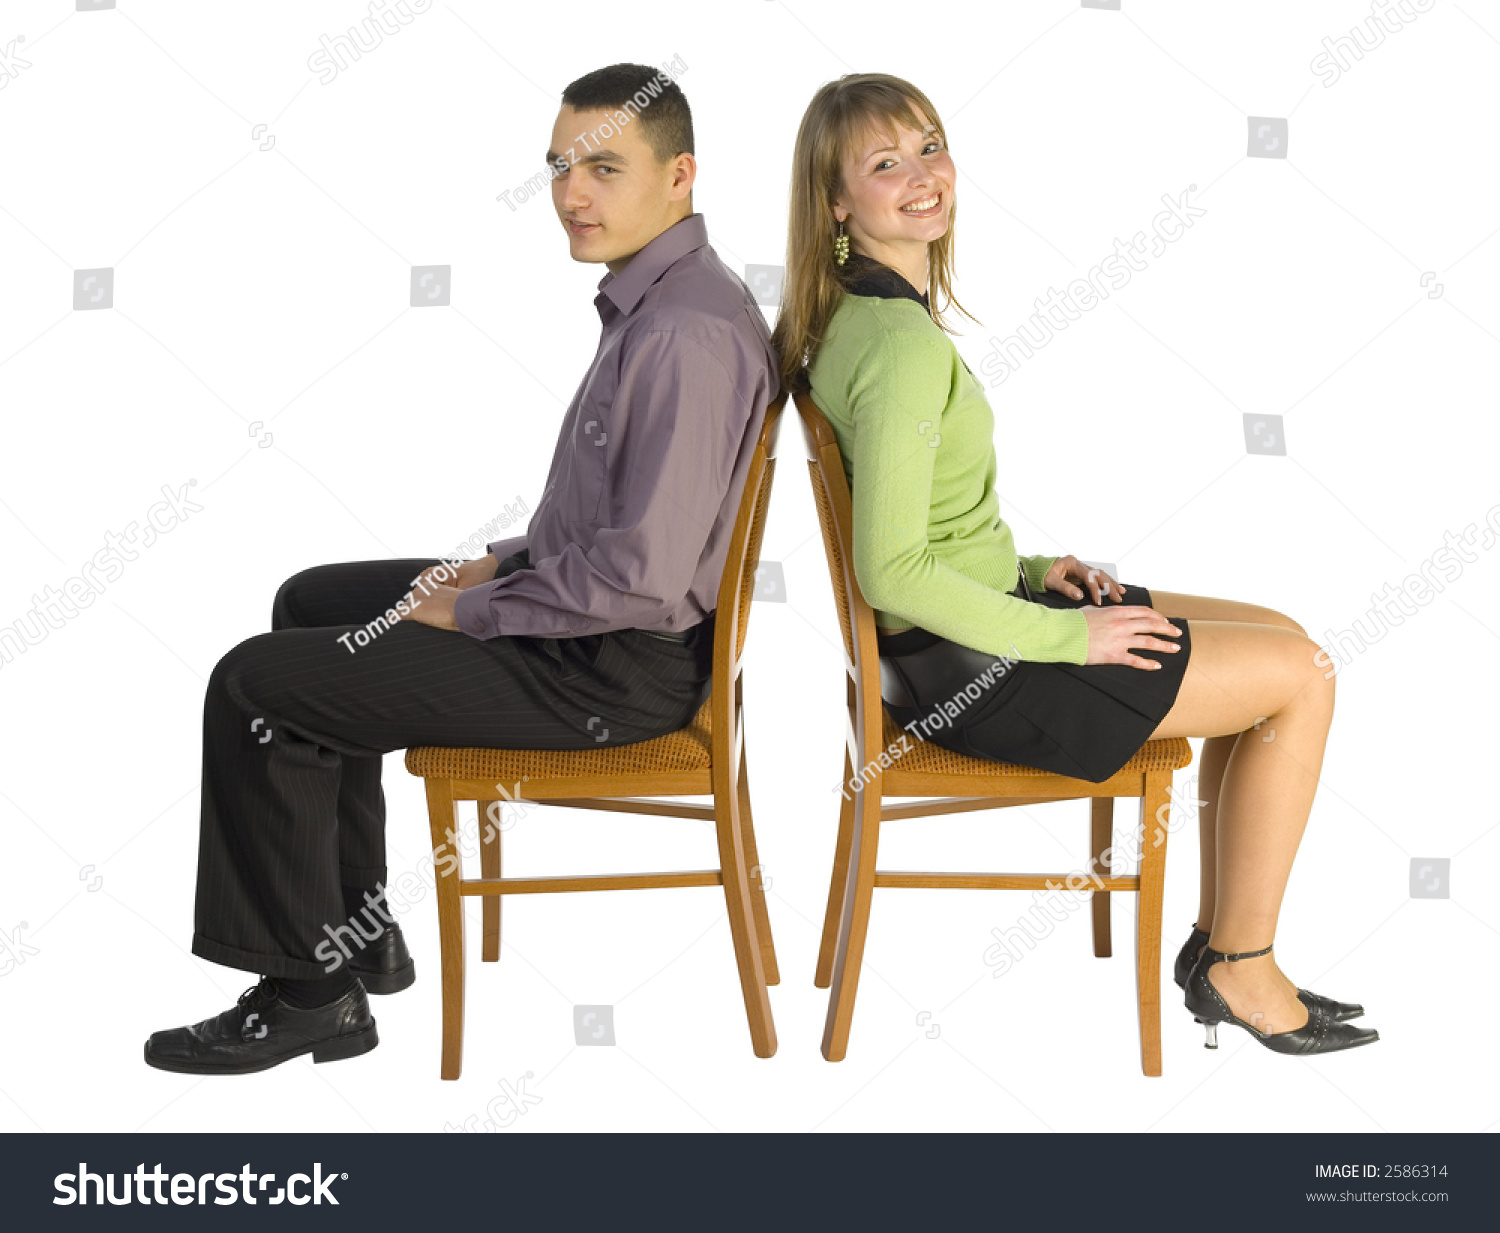 Сидя постою. Человек на стуле. Человек сидит на стуле. Человек табурет. Человек сидя на стуле.